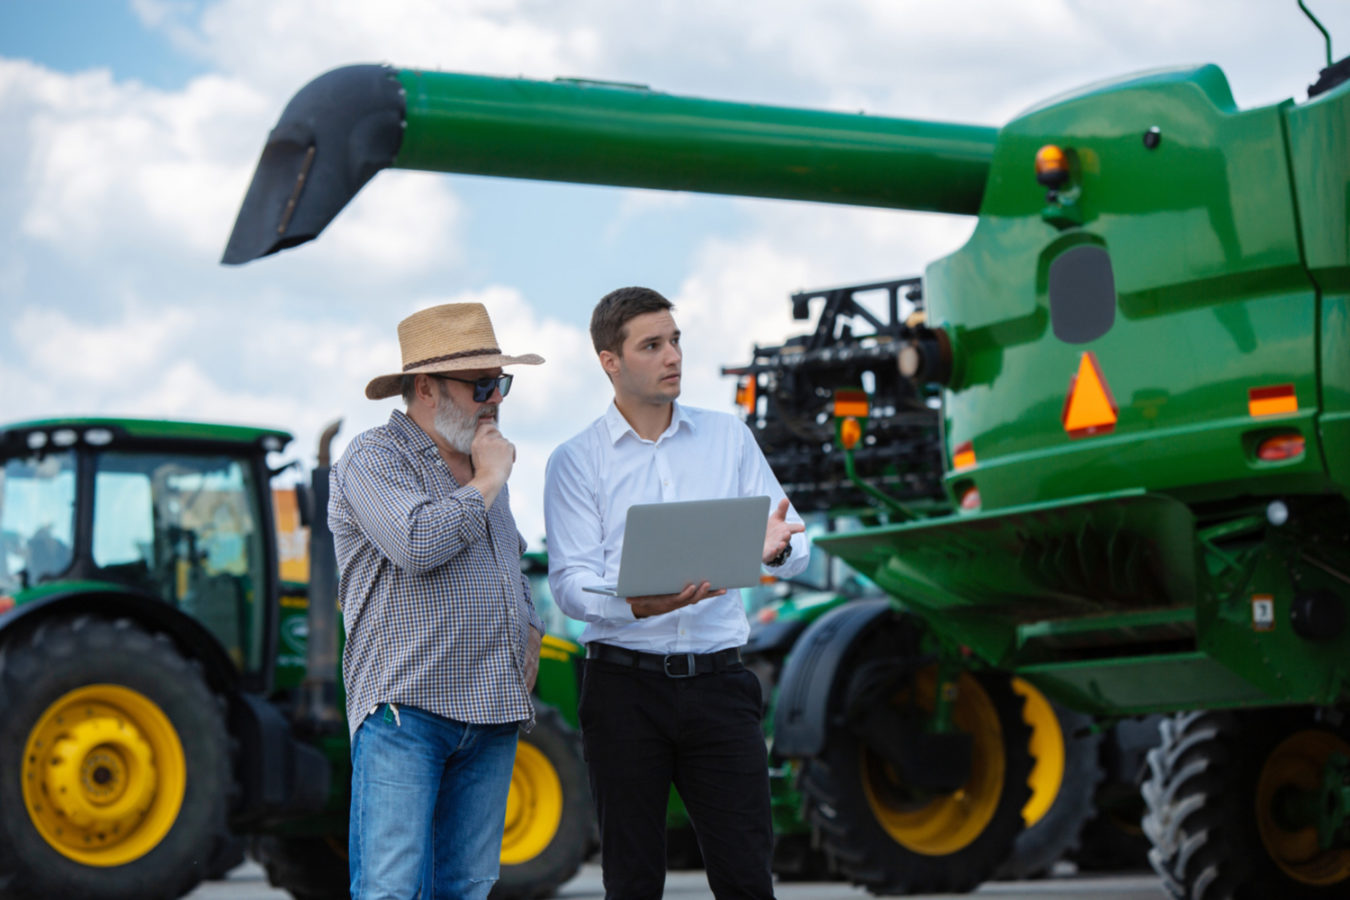 imagem monstra duas pessoas conversando em frente a uma máquina agrícola para ilustrar um artigo sobre engenharia agrícola